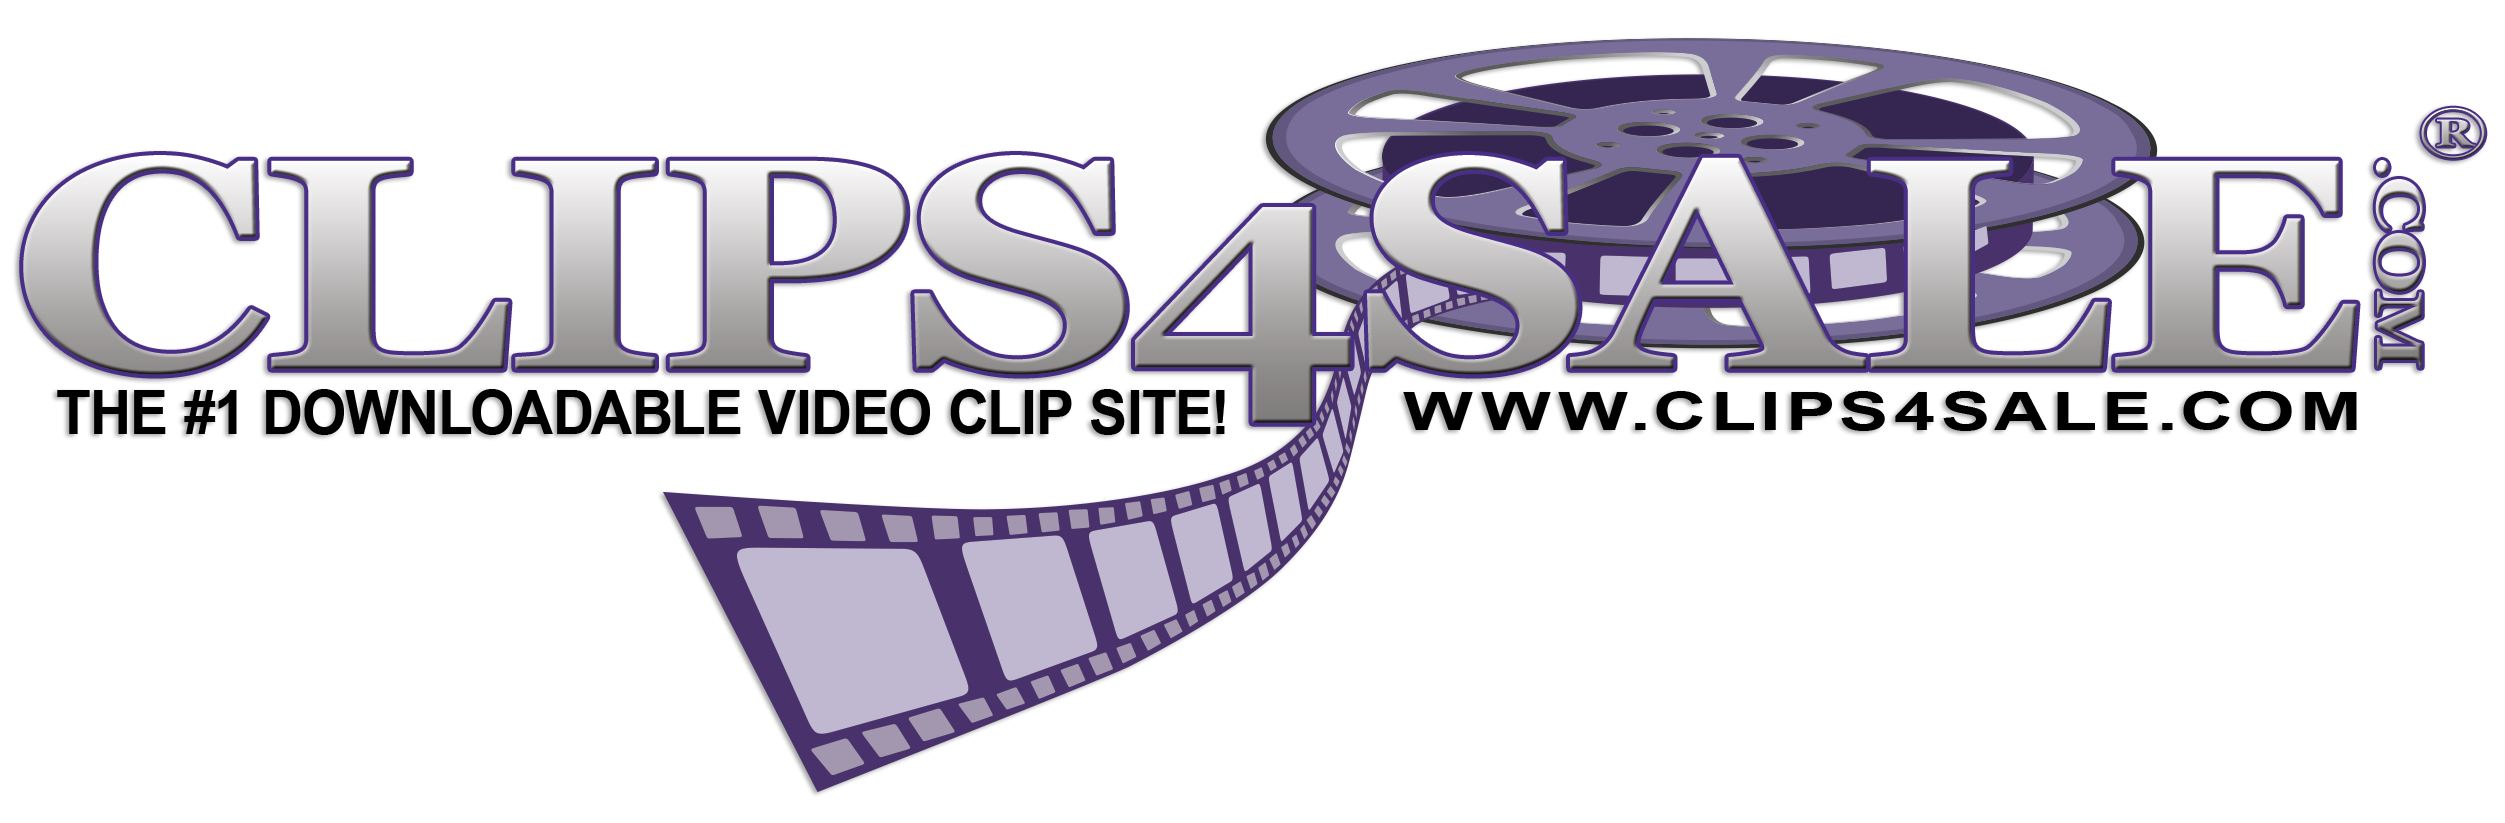 clips4sale_reel_logo.png->description